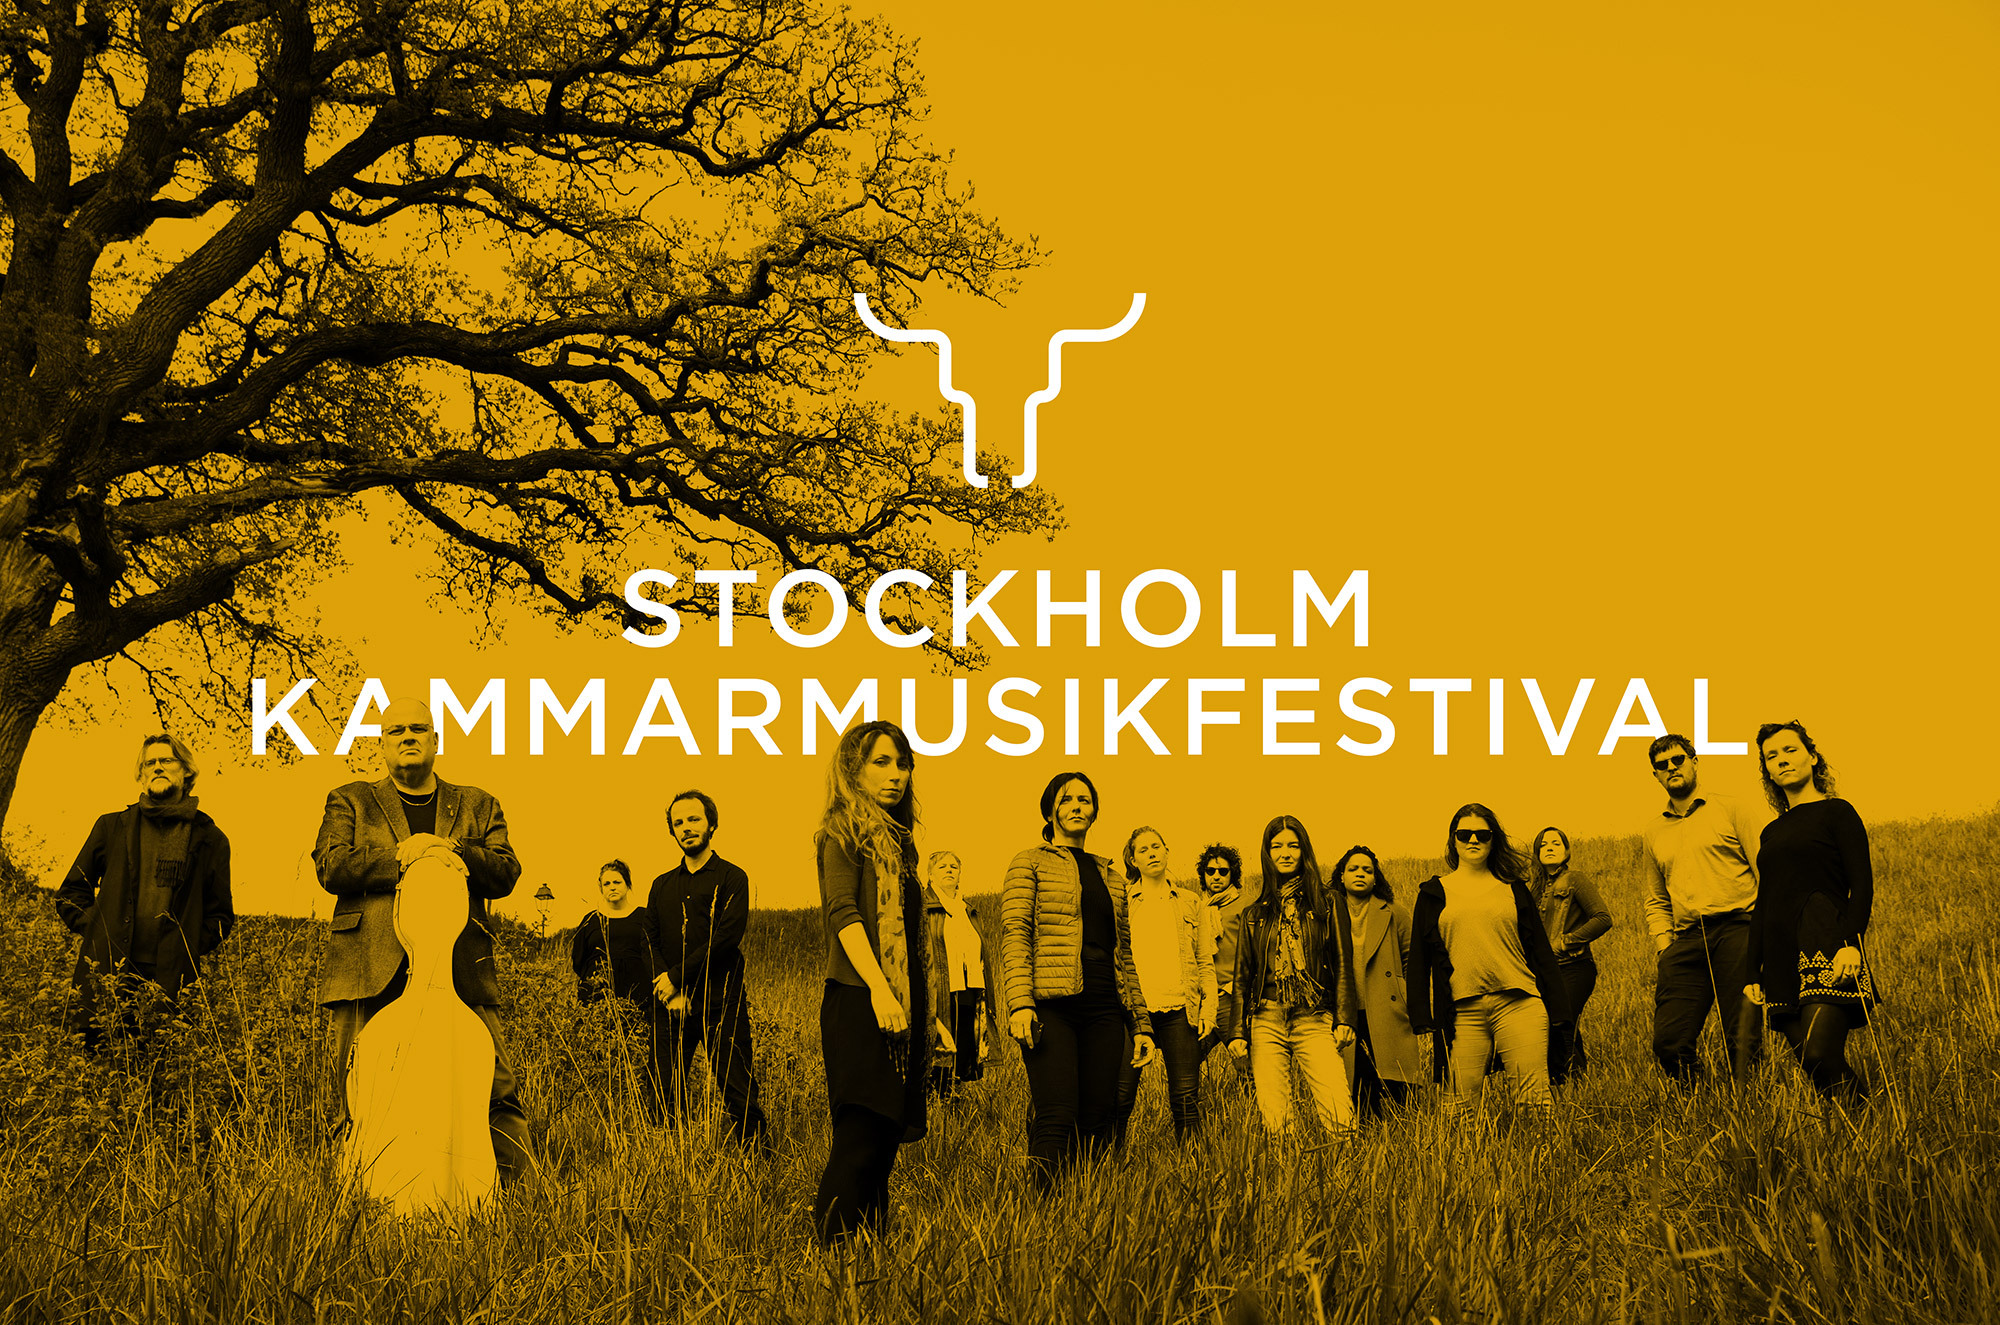 Old Ox Stockholm Kammarmusikfestival